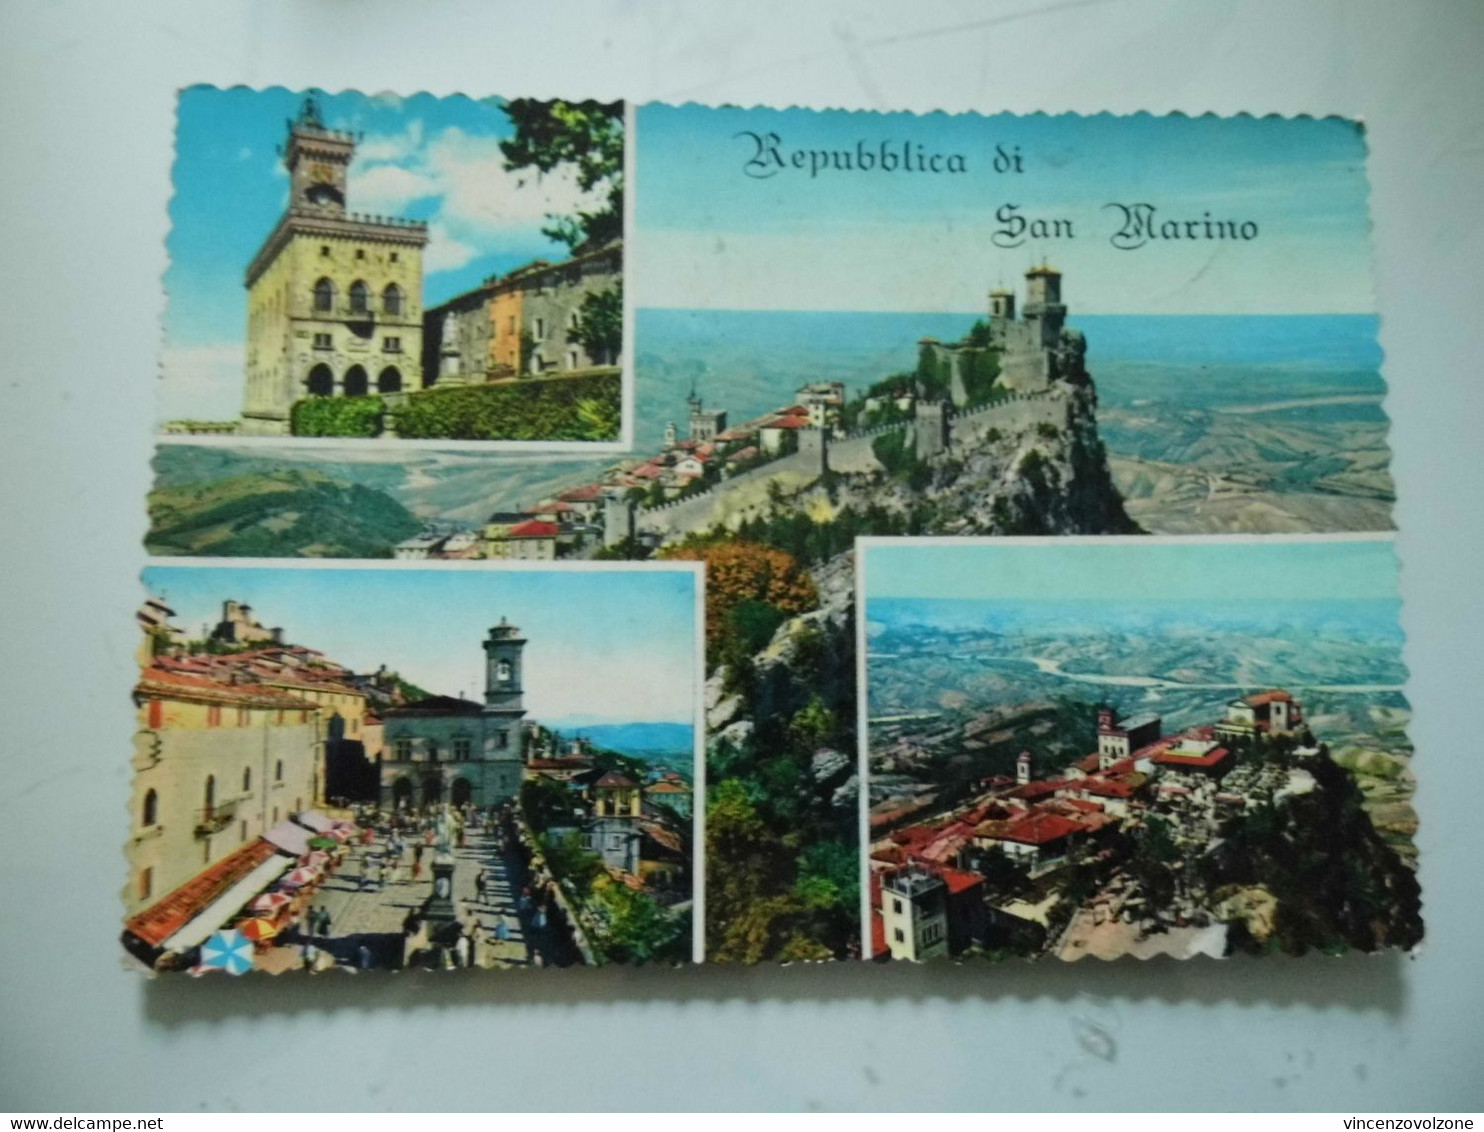 Cartolina Viaggiata "Repubblica Di S. Marino" 1966 - San Marino